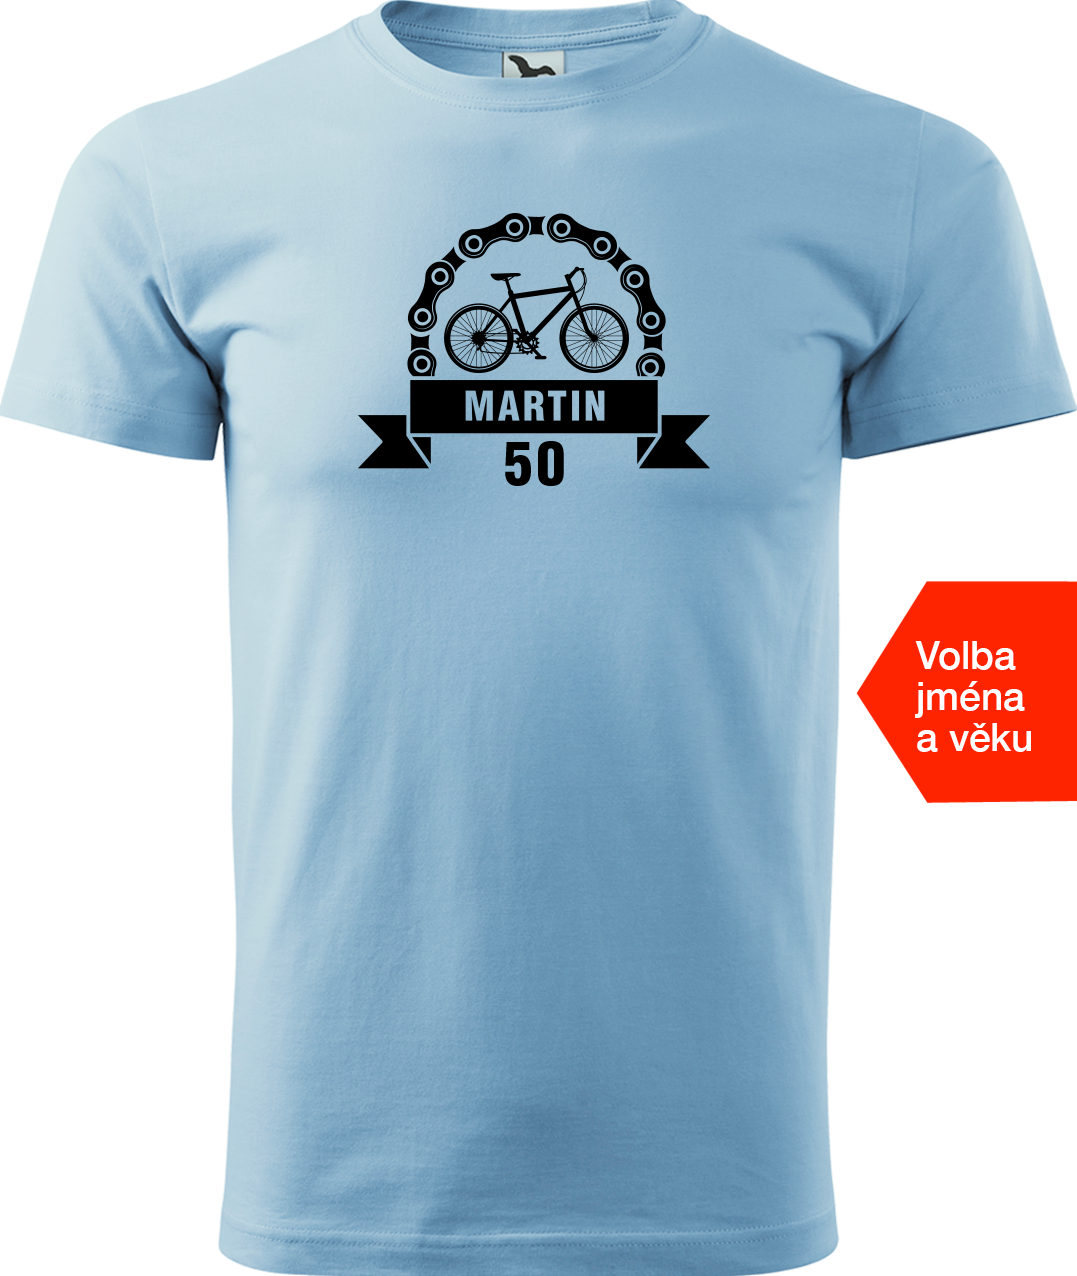 Pánské tričko pro cyklistu se jménem a věkem - Blahopřání Velikost: XL, Barva: Nebesky modrá (15)